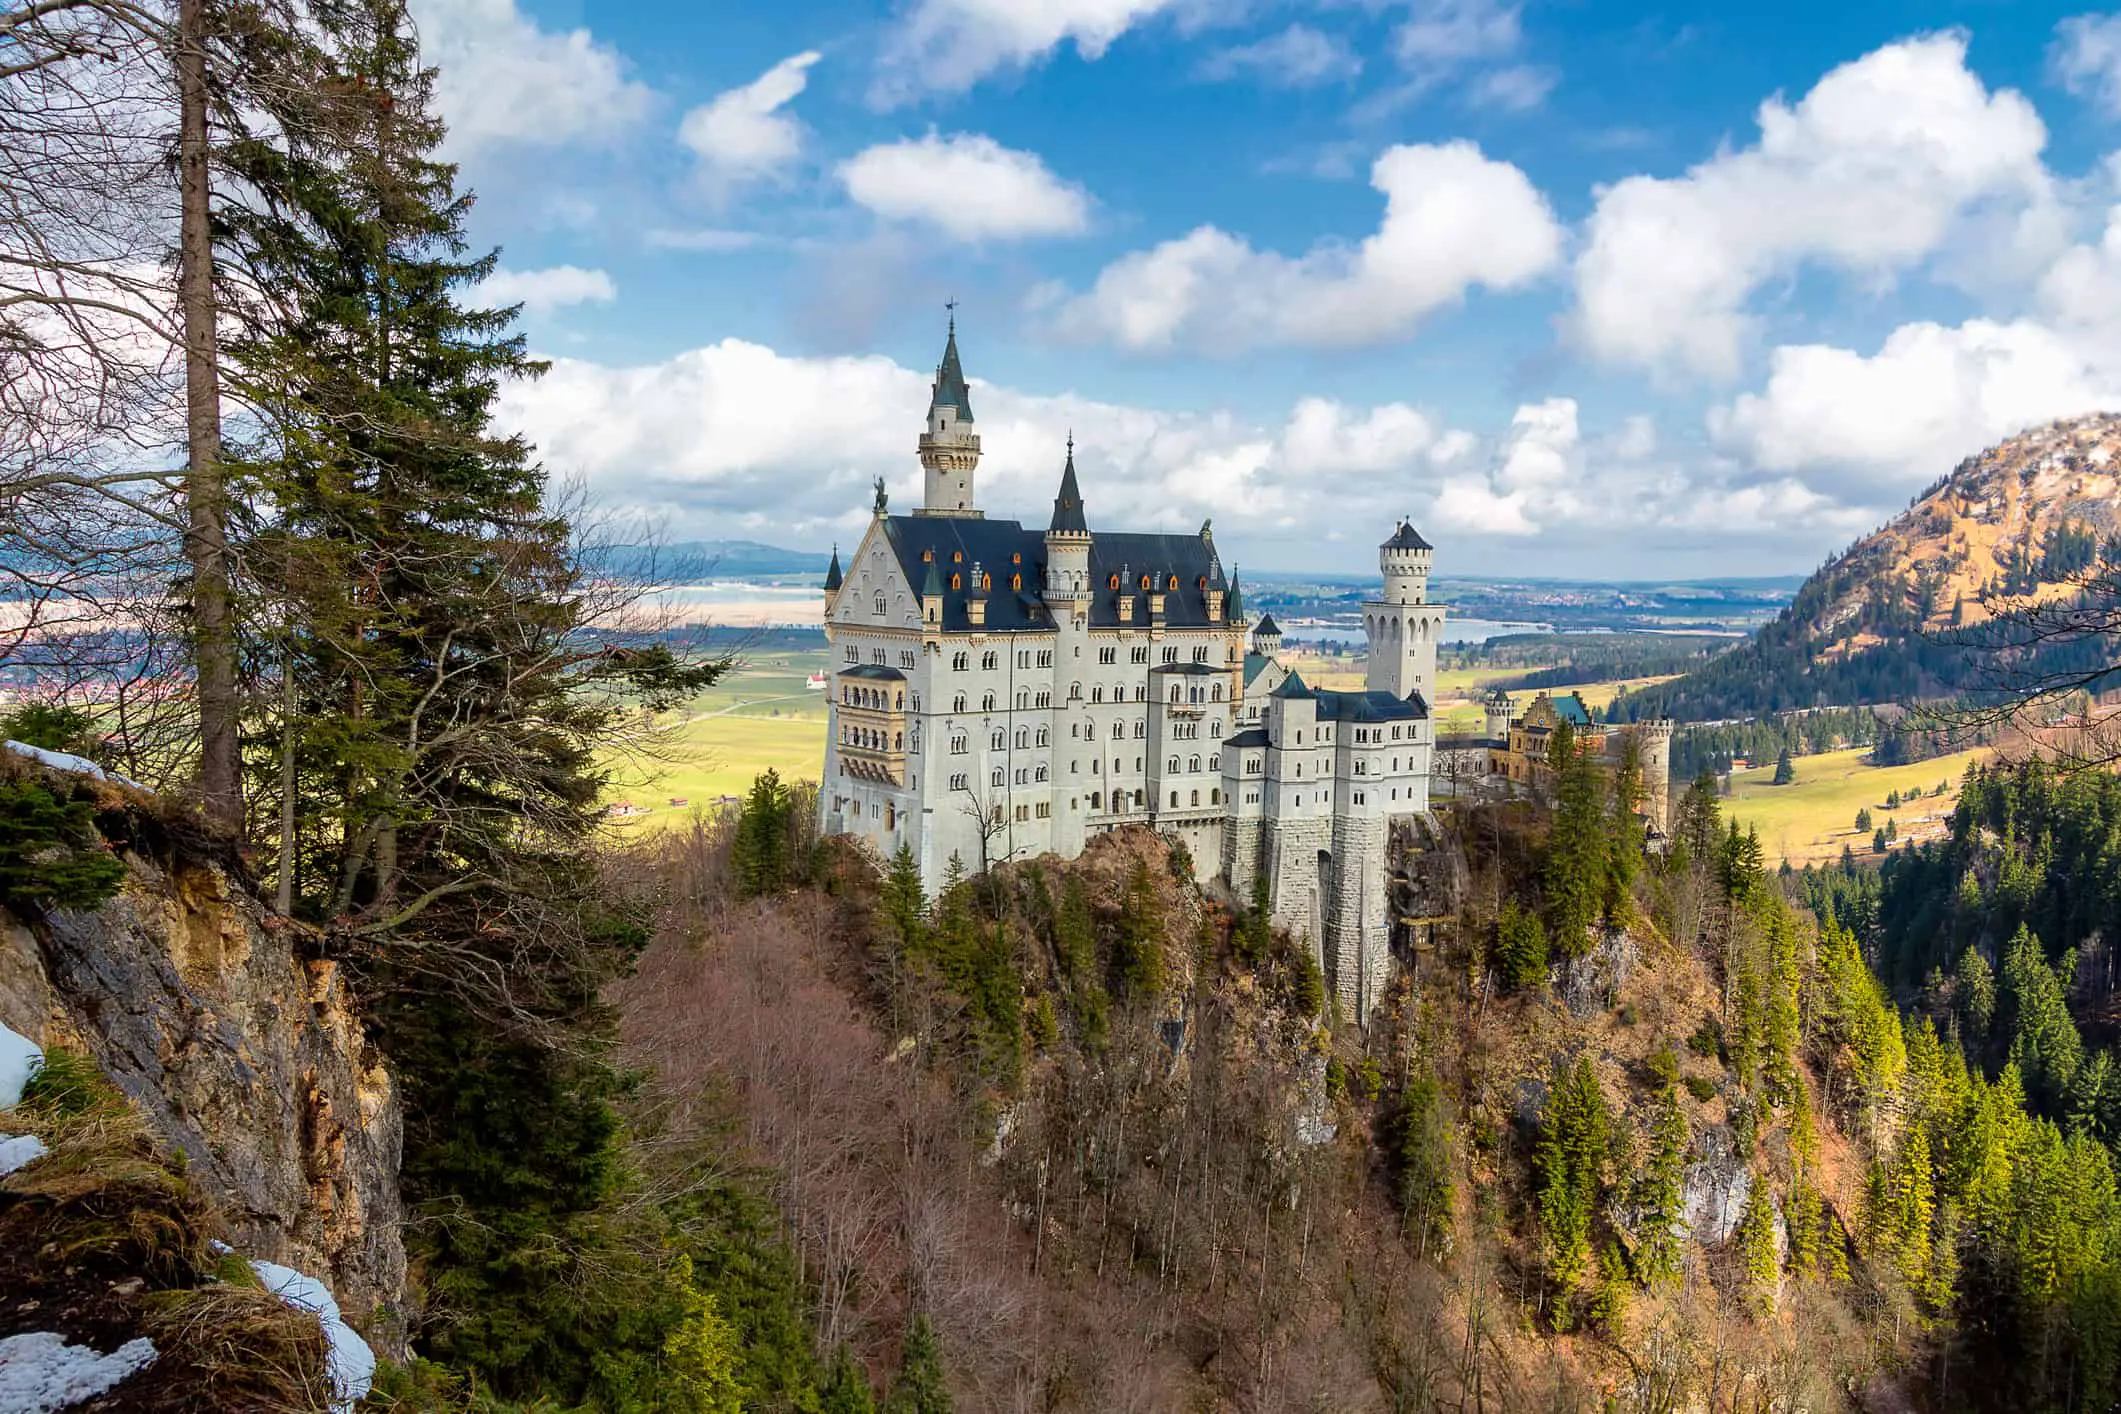 King Ludwigs Castle in Germany